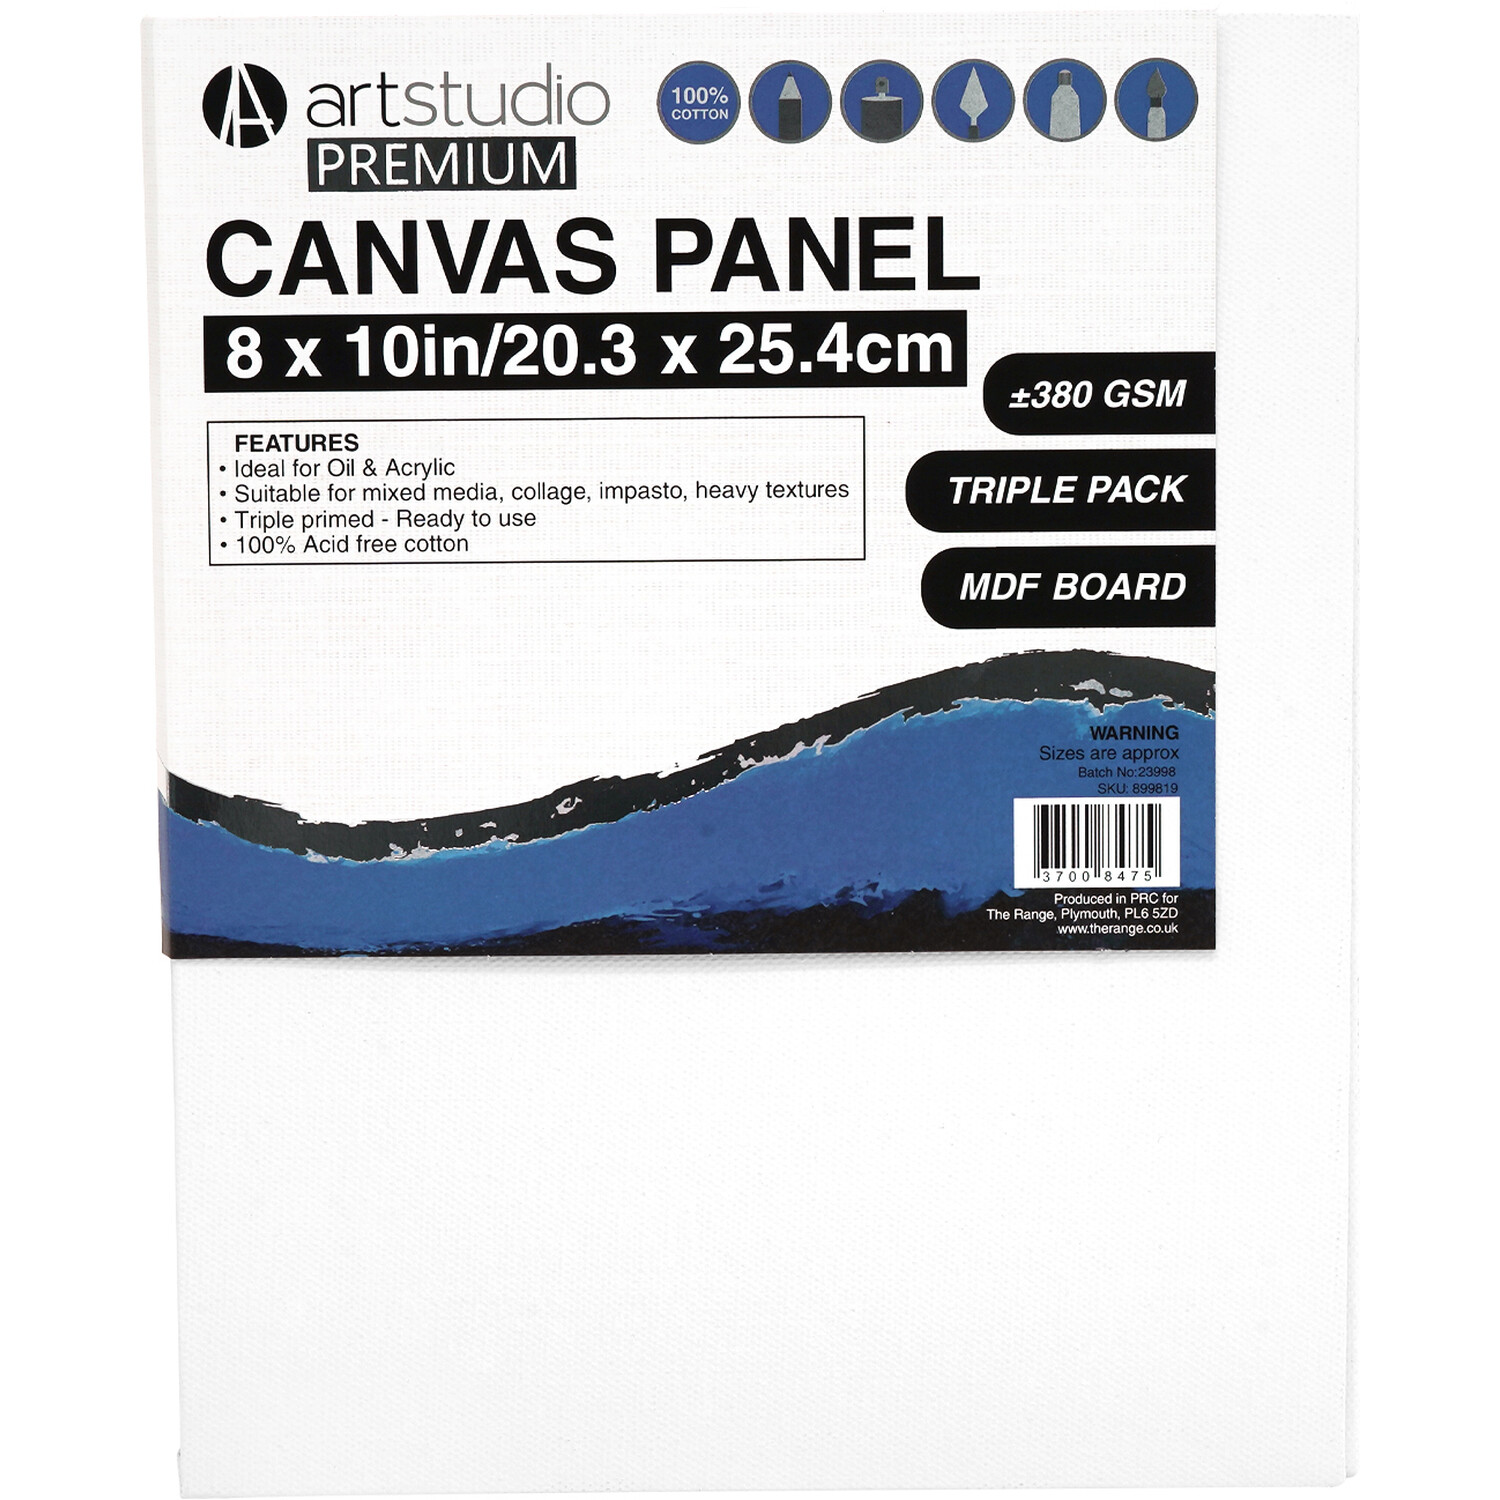 Art Studio Premium Canvas Panel 20.3 x 25.4cm 3 Pack Image 1